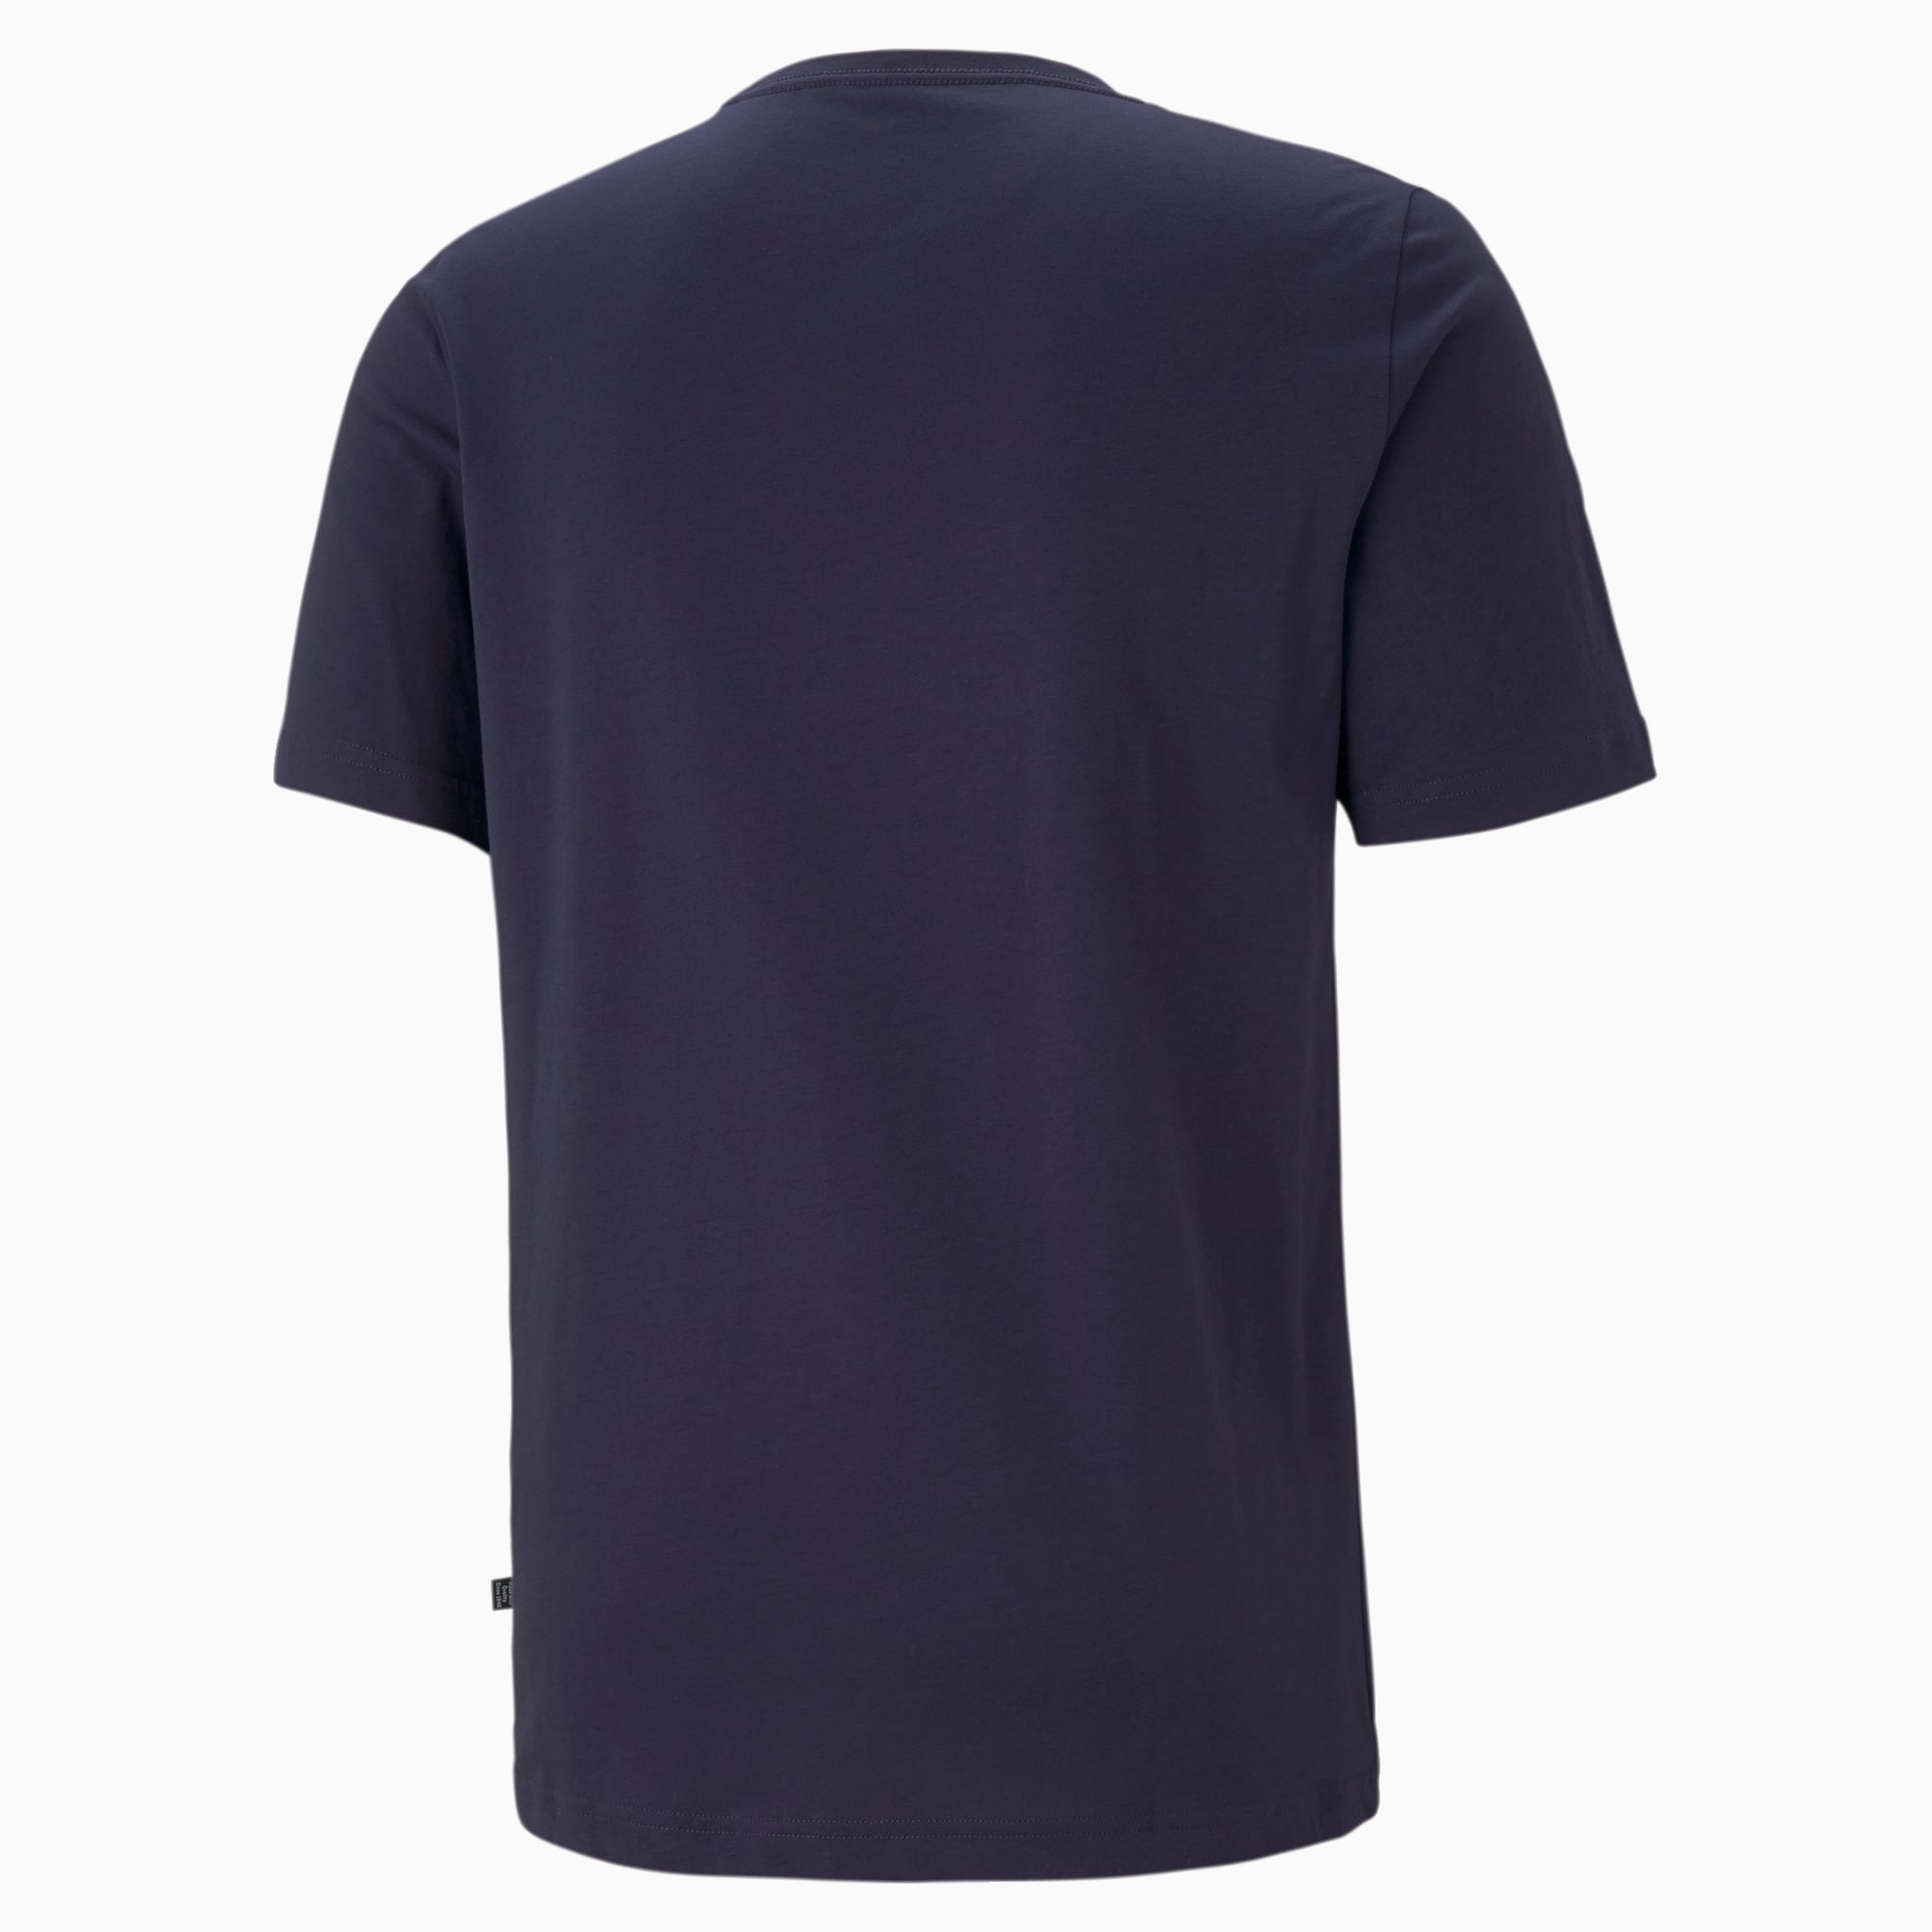 PUMA Essentials Small Logo T-Shirt Men, Peacoat, Size XS, Clothing